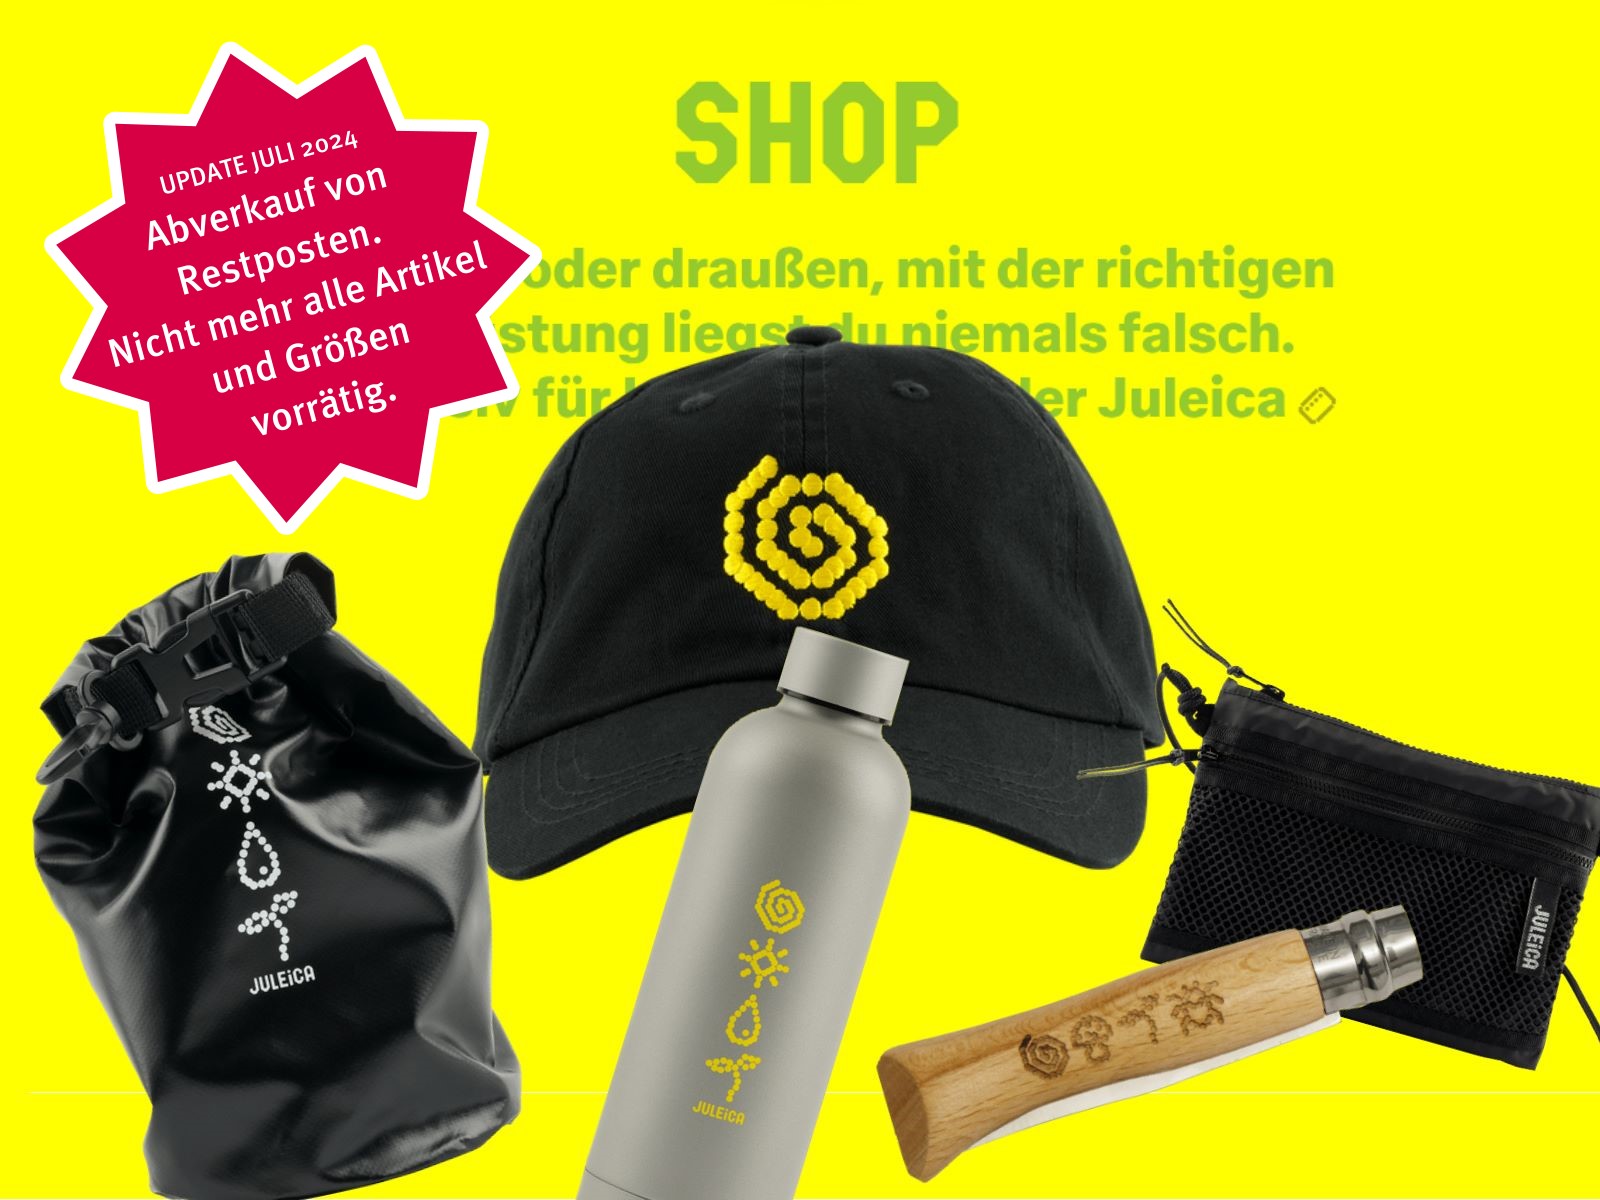 Produkte aus dem Shop auf gelbem Hintergrund: Cap, Messer, Trinkflasche, und mehr.